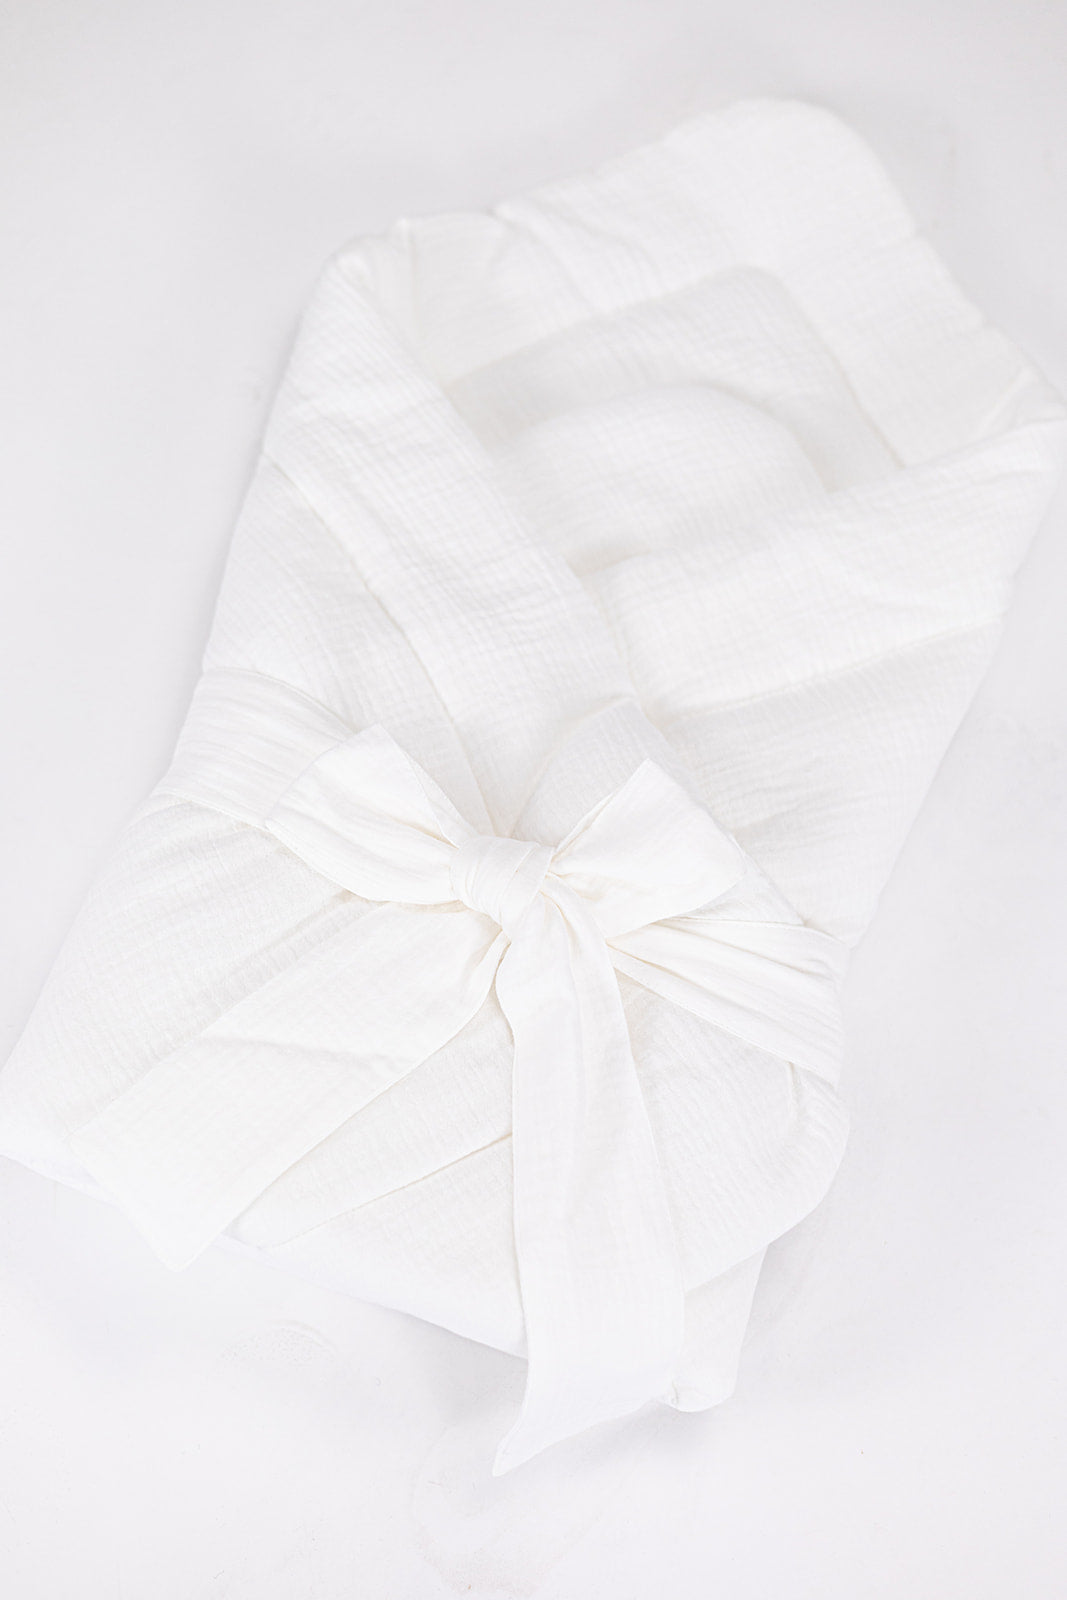 Envoltorio Blanco: Tranquilidad en forma de algodón